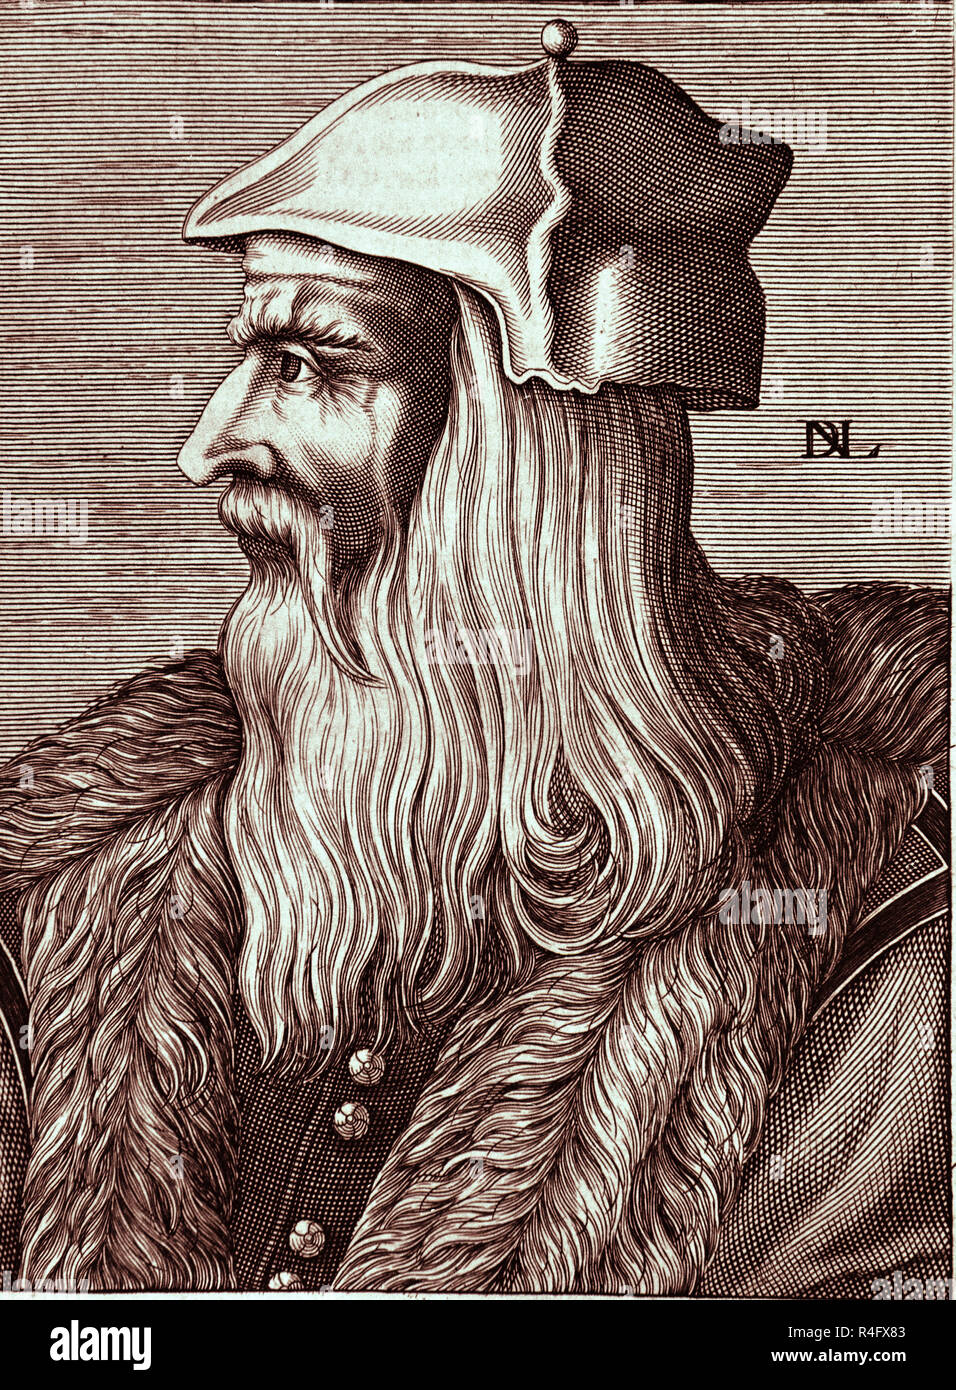 RETRATO DE LEONARDO DA VINCI (1452/1519) - PINTOR DEL RENACIMIENTO  ITALIANO. Location: PRIVATE COLLECTION. MADRID. SPAIN Stock Photo - Alamy